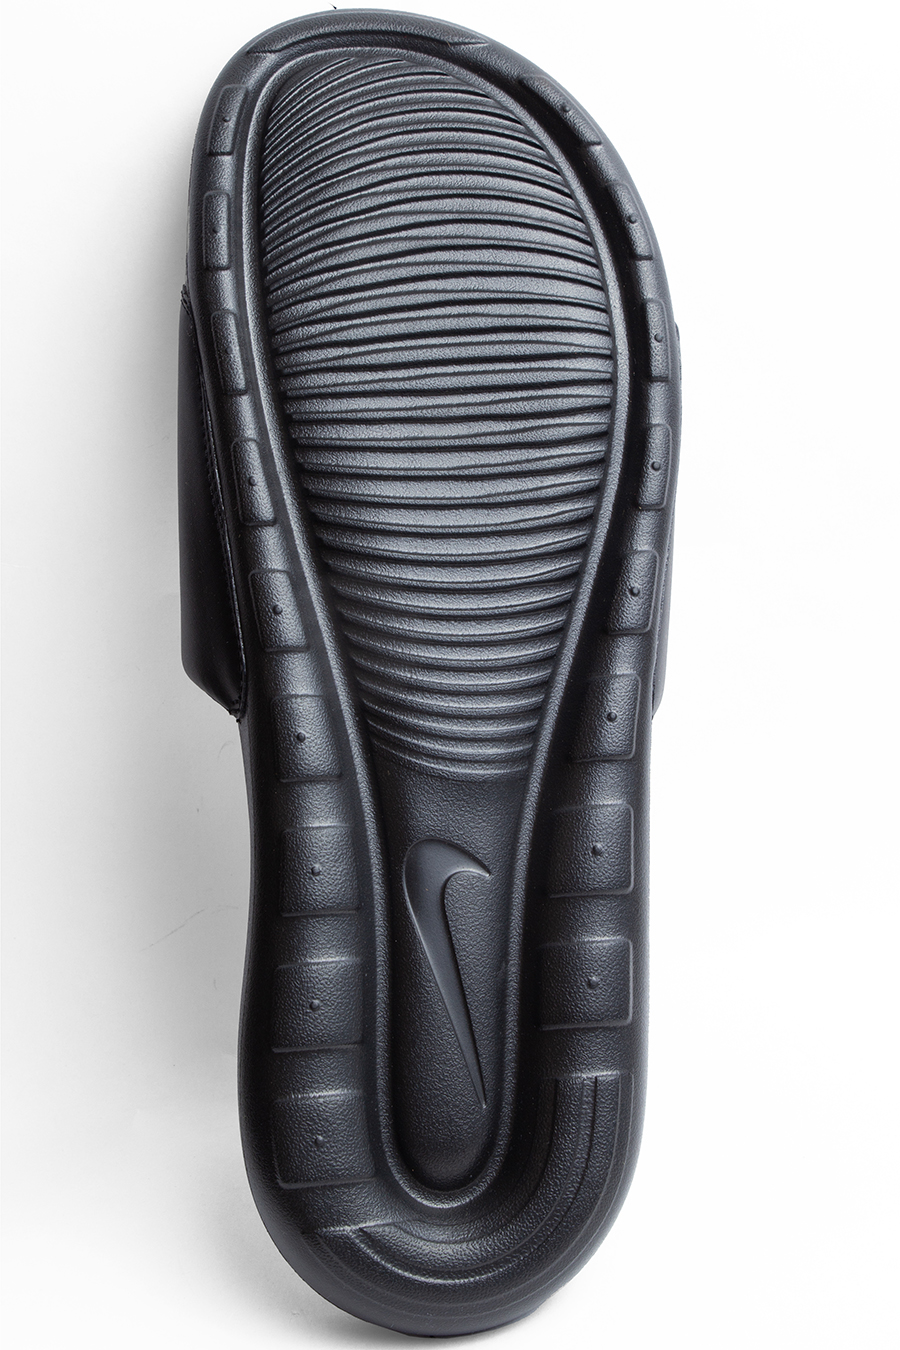 Черные шлепки Nike большого размера